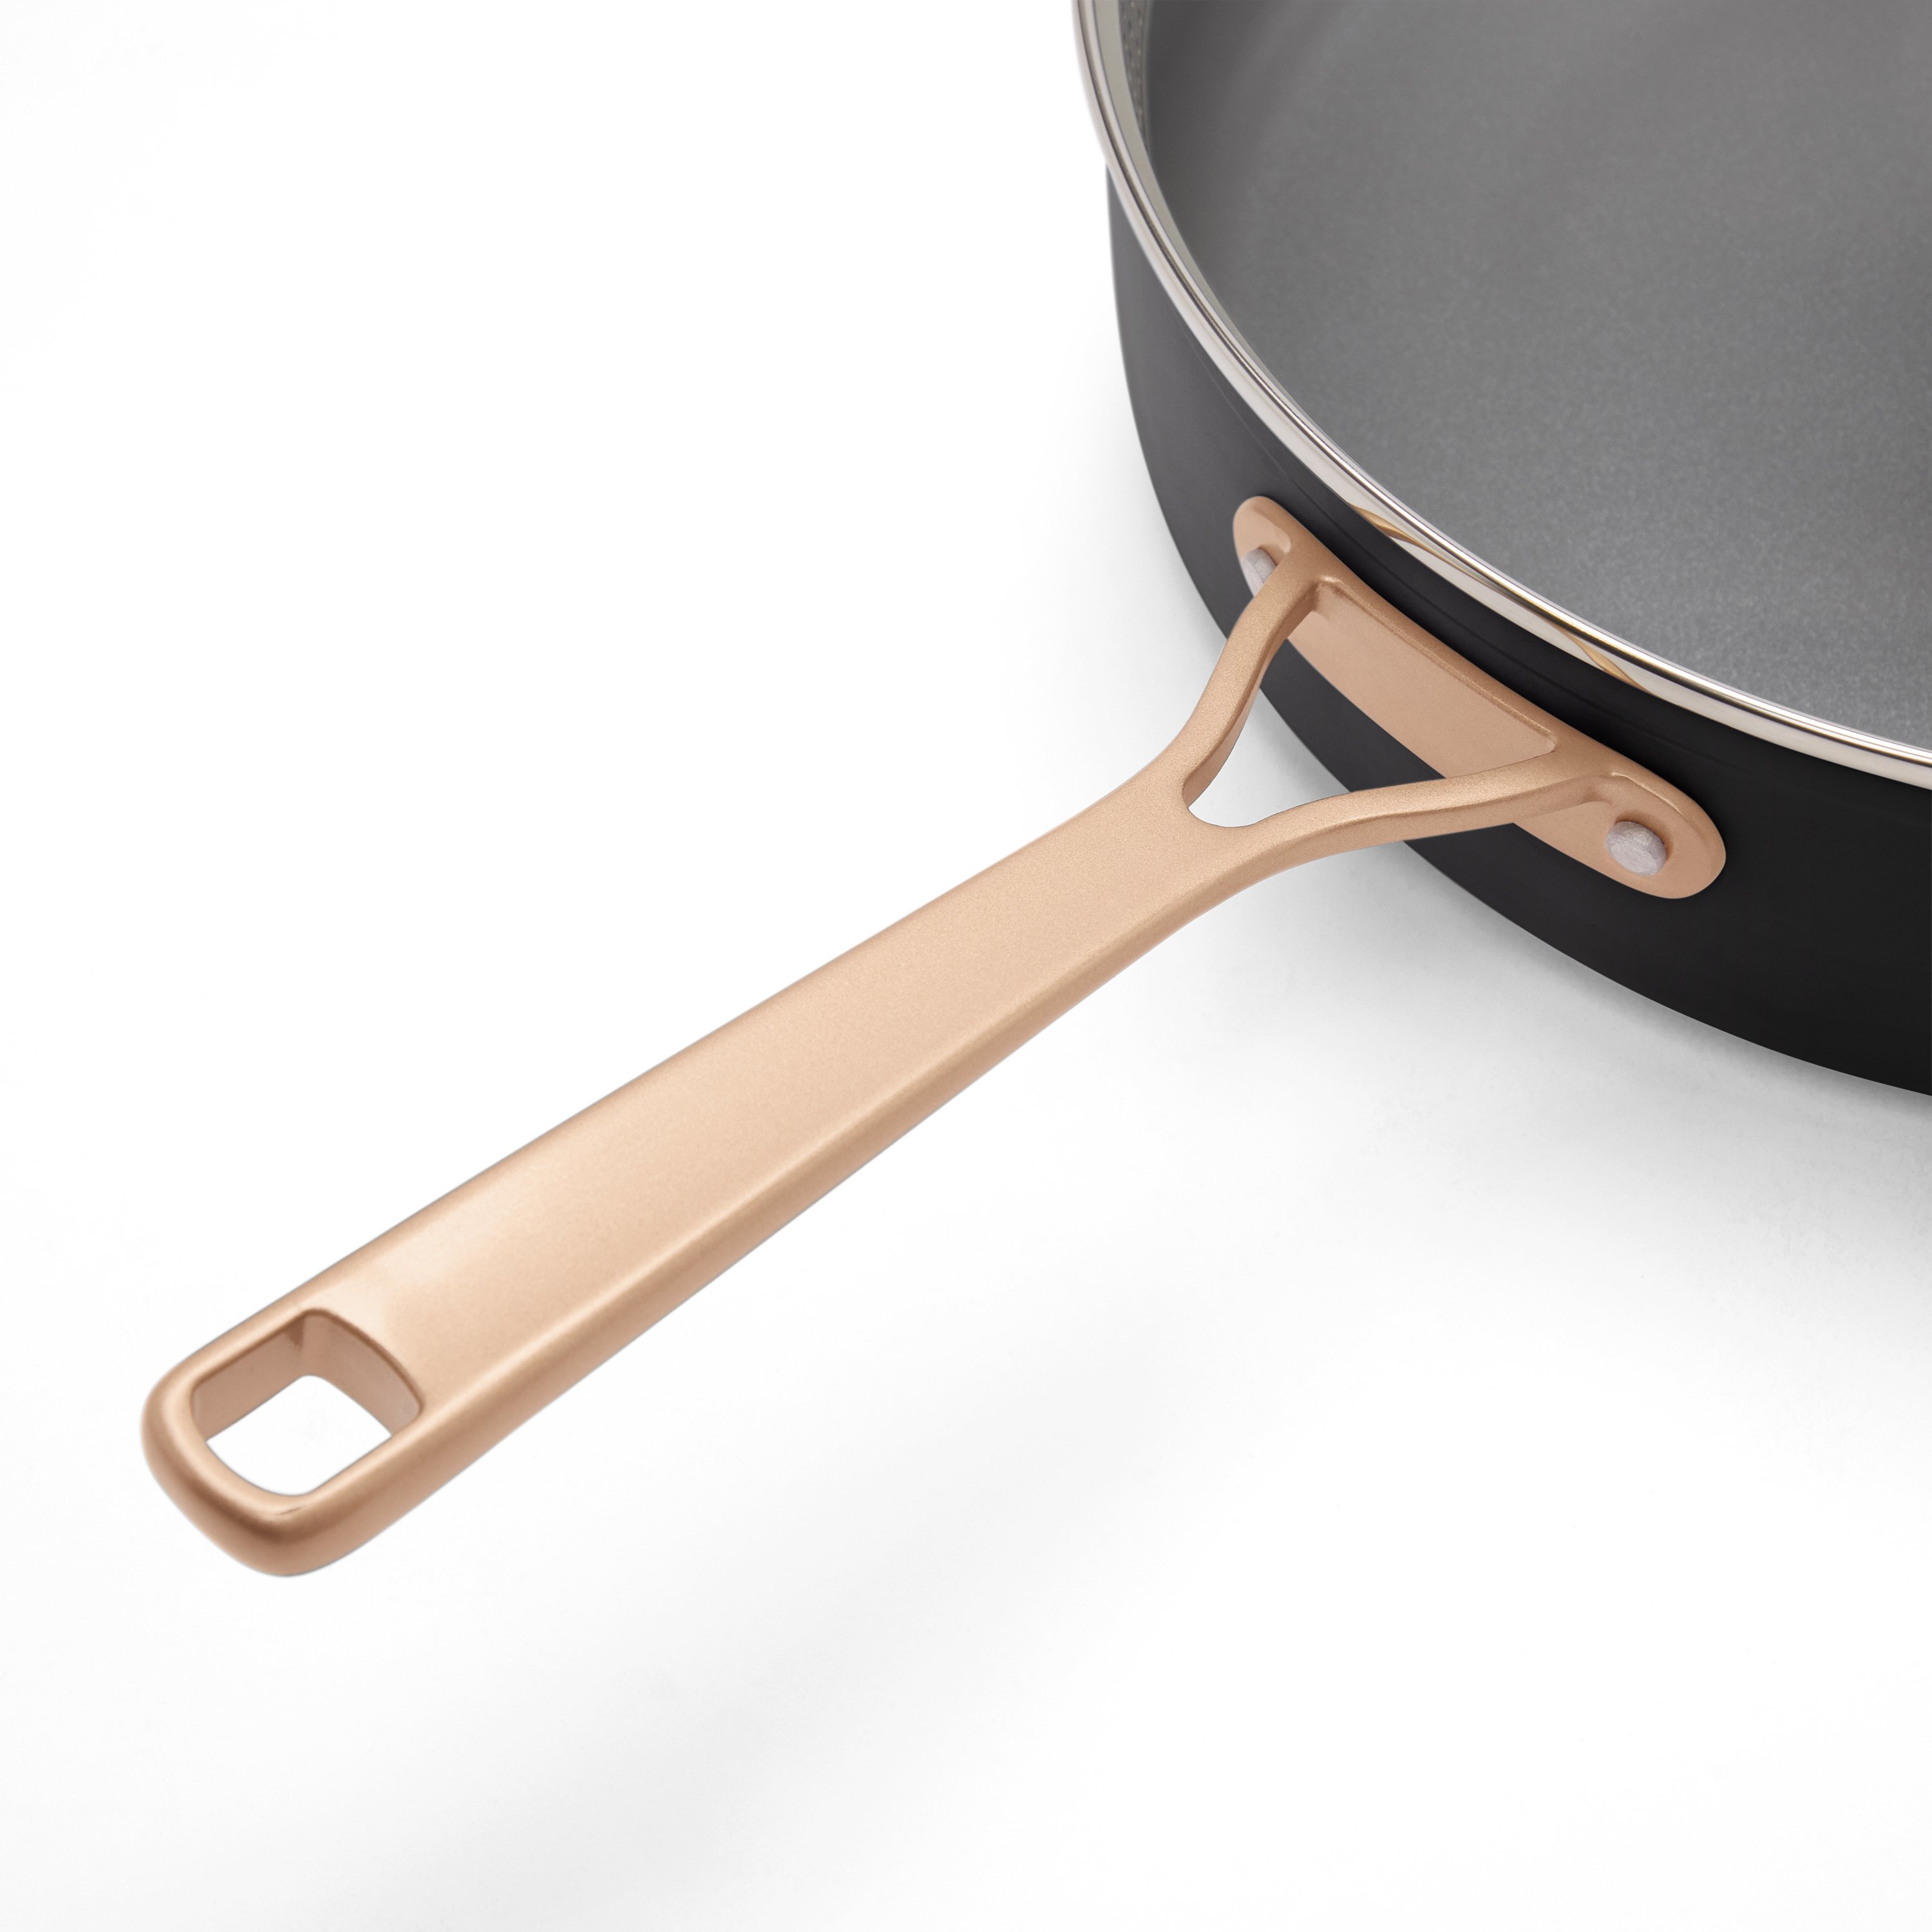 Order a Nonstick Deep Sauté Pan That Delivers More Surface Area